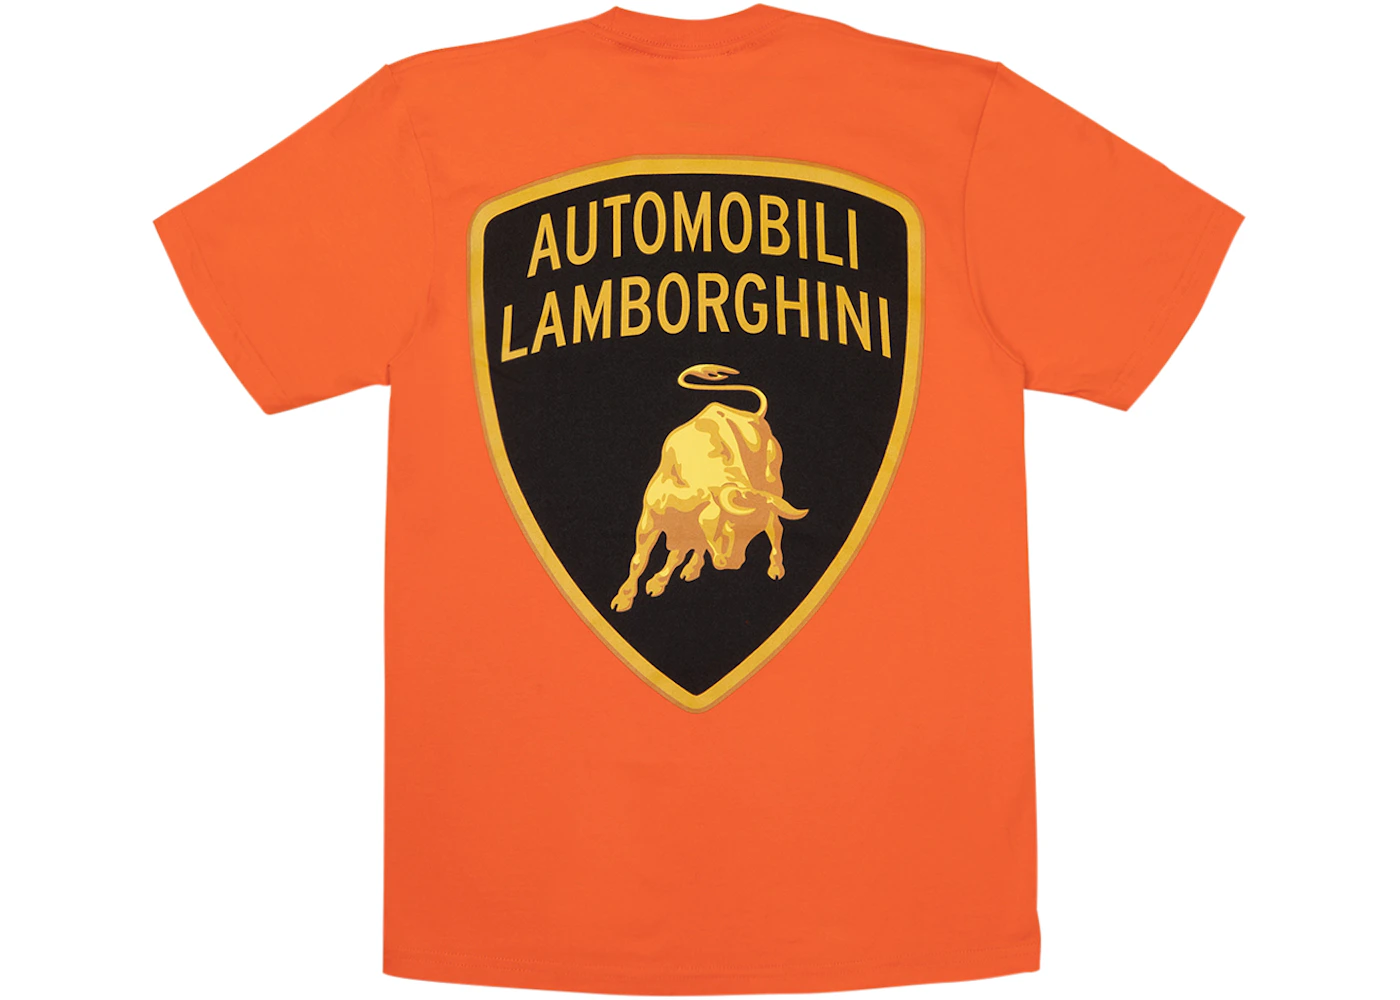 Automobili Lamborghini Shirt | peacecommission.kdsg.gov.ng